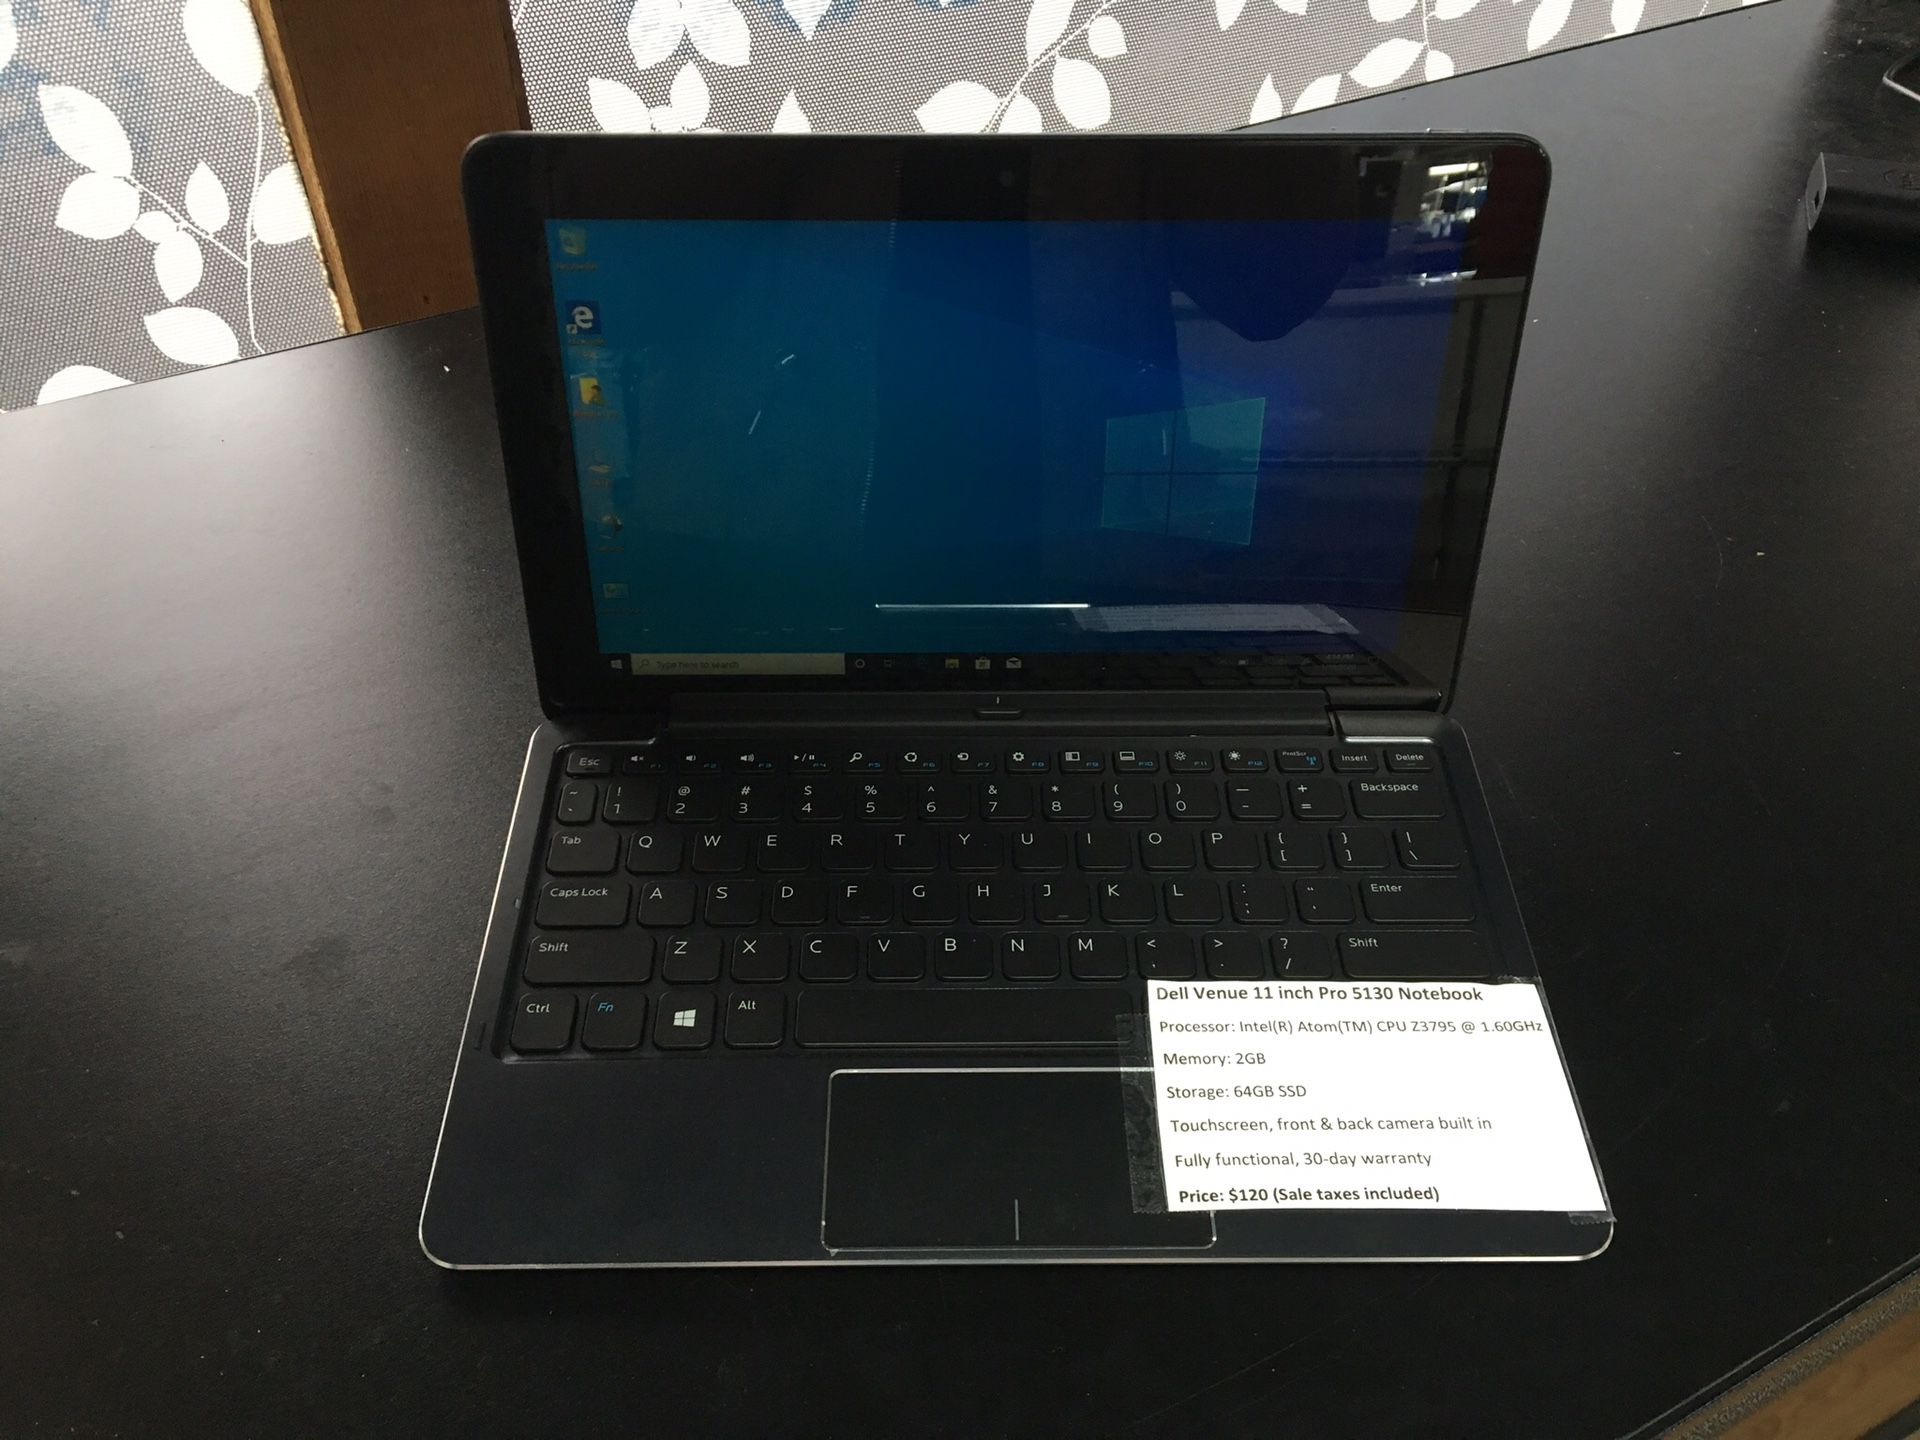 Dell Venue 11 inch Pro 5130 touchscreen notebook